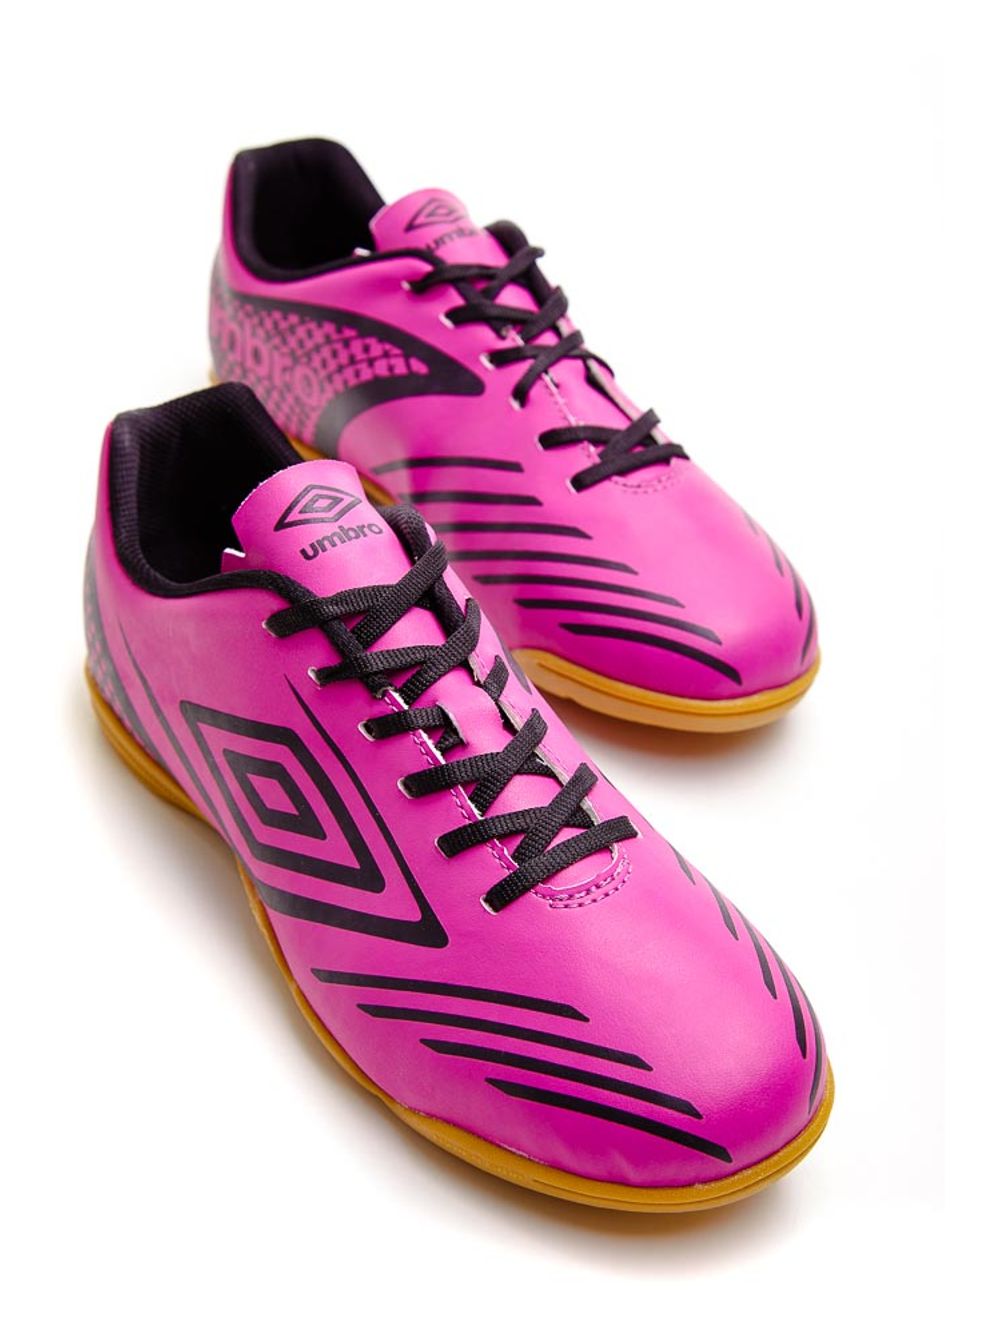 Chuteira Futsal Footwear Umbro Guardian 0f72095 Pink - pittol